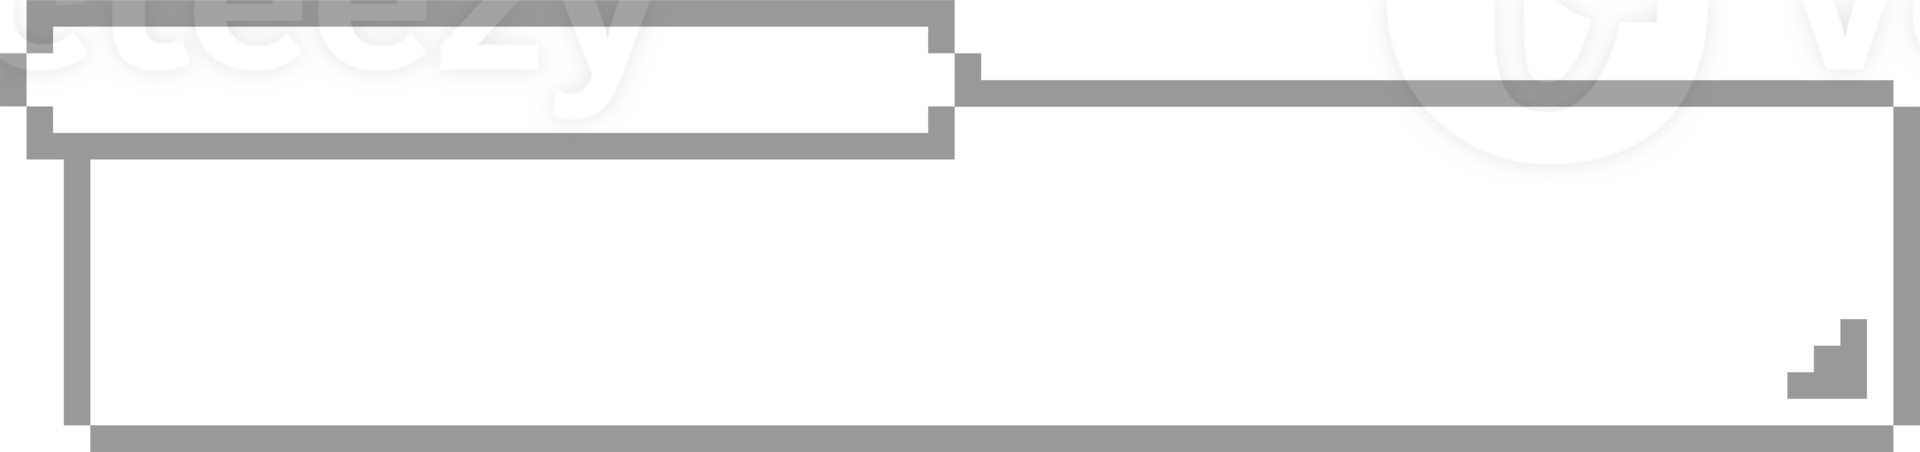 8 bit retrò gioco pixel discorso bolla Palloncino icona etichetta promemoria parola chiave progettista testo scatola bandiera png